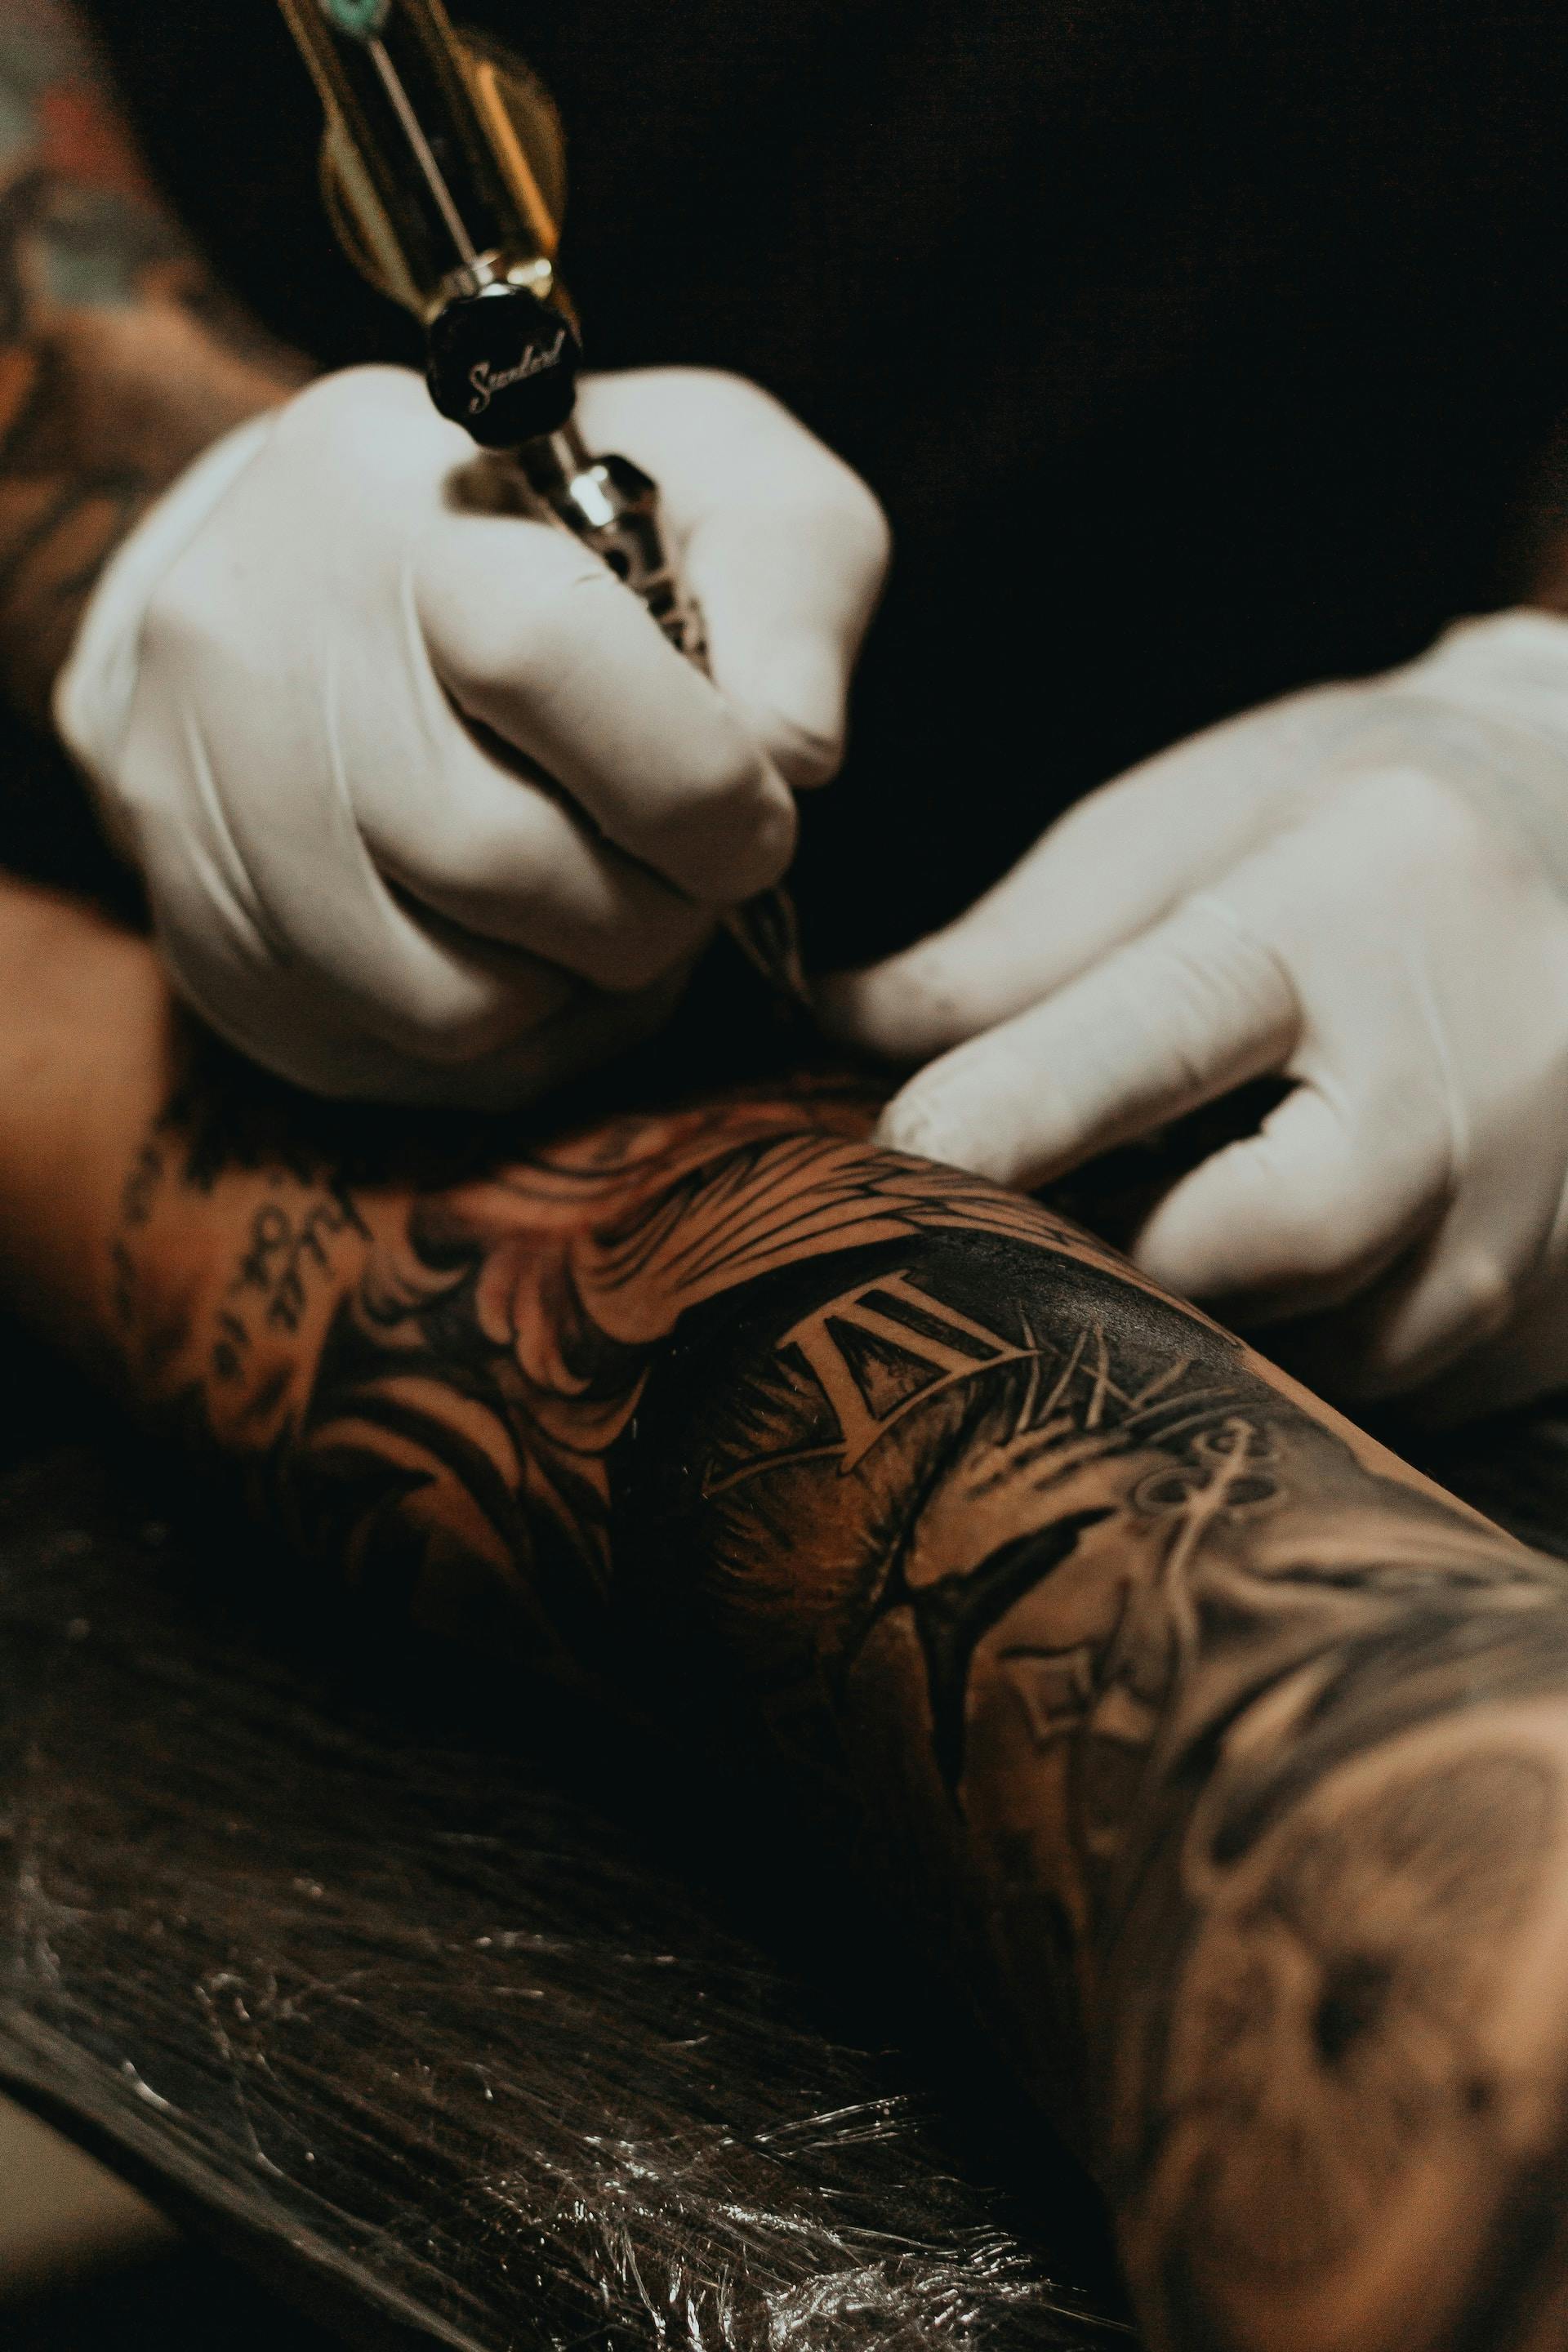 A tattooist